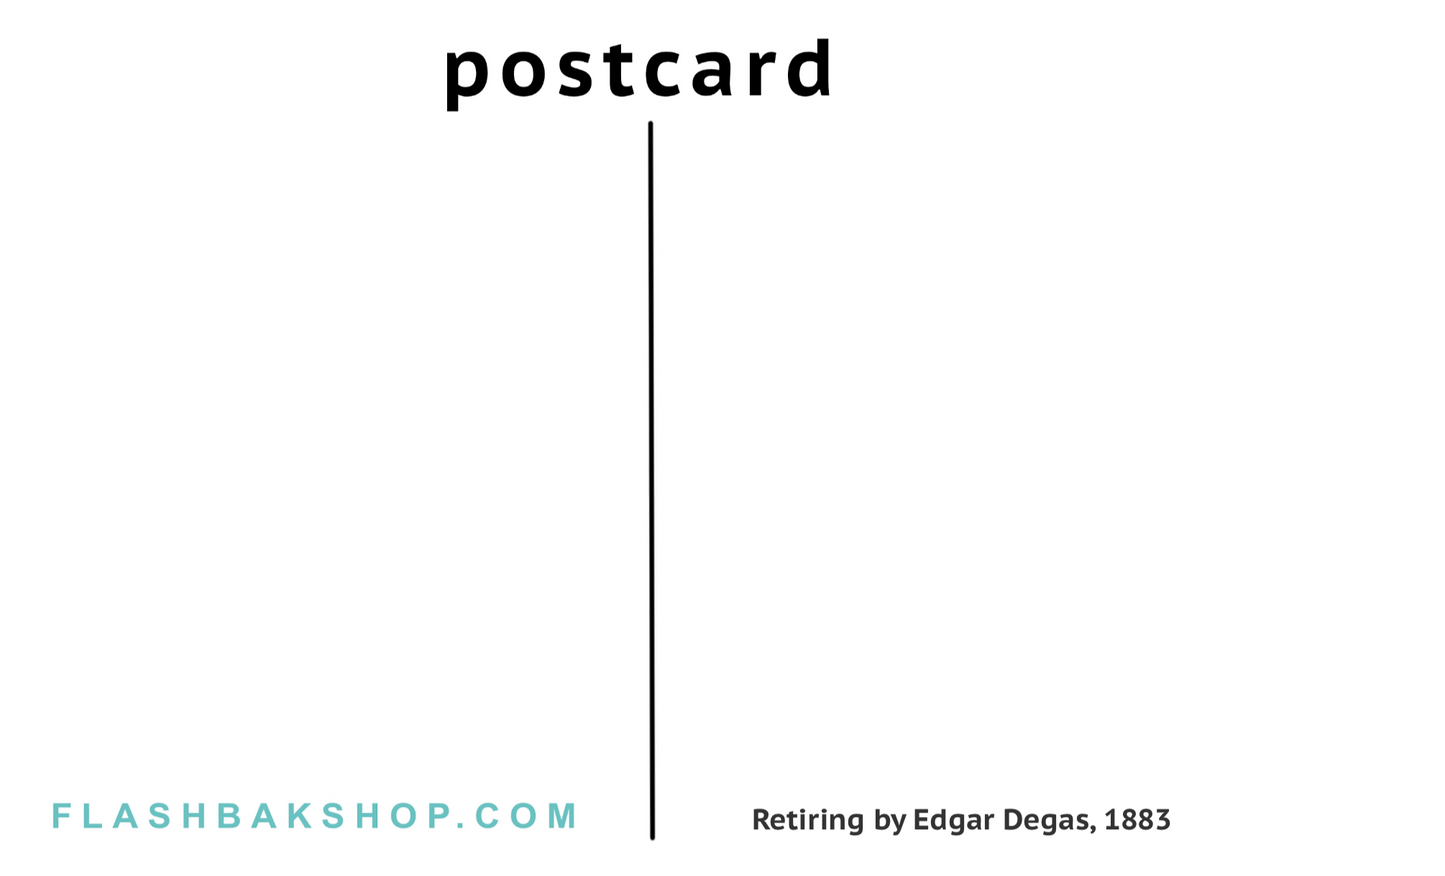 Prendre sa retraite par Edgar Degas, 1883 - Carte postale